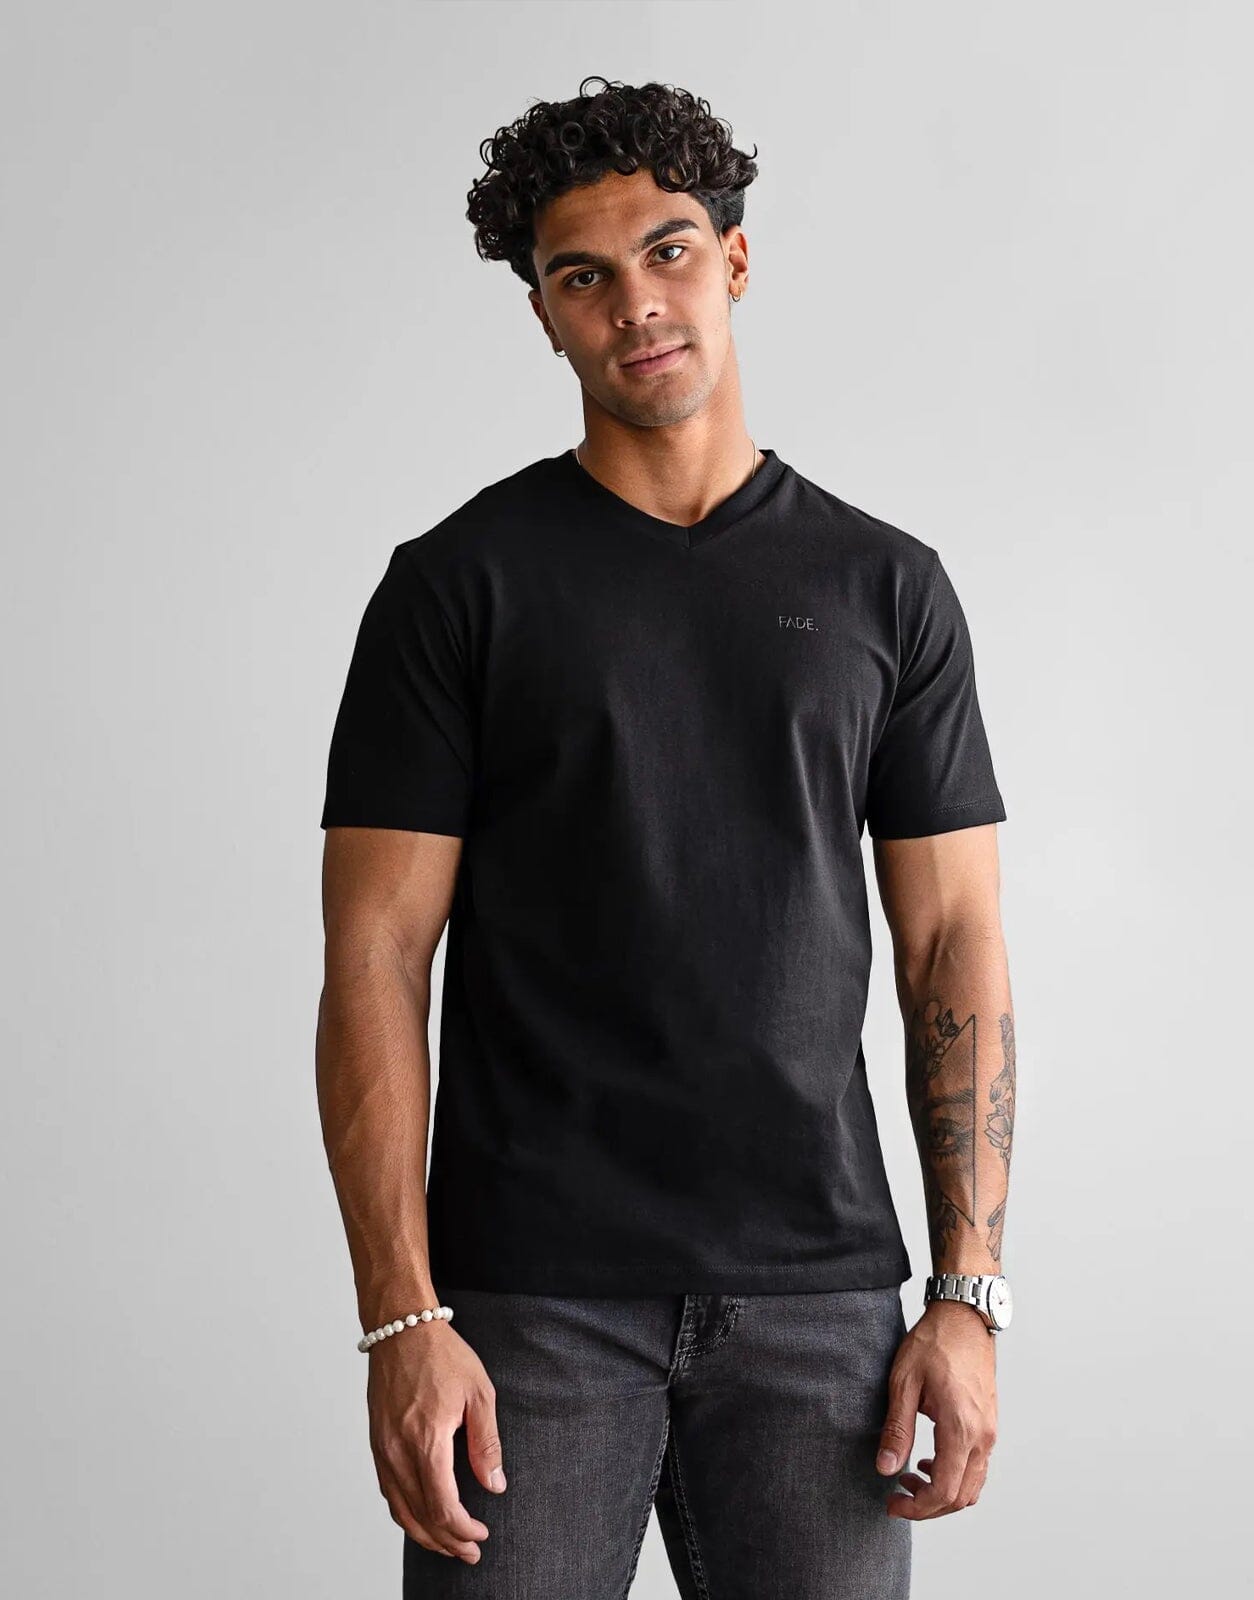 Fade Essential V-Neck Black T-Shirt - Subwear